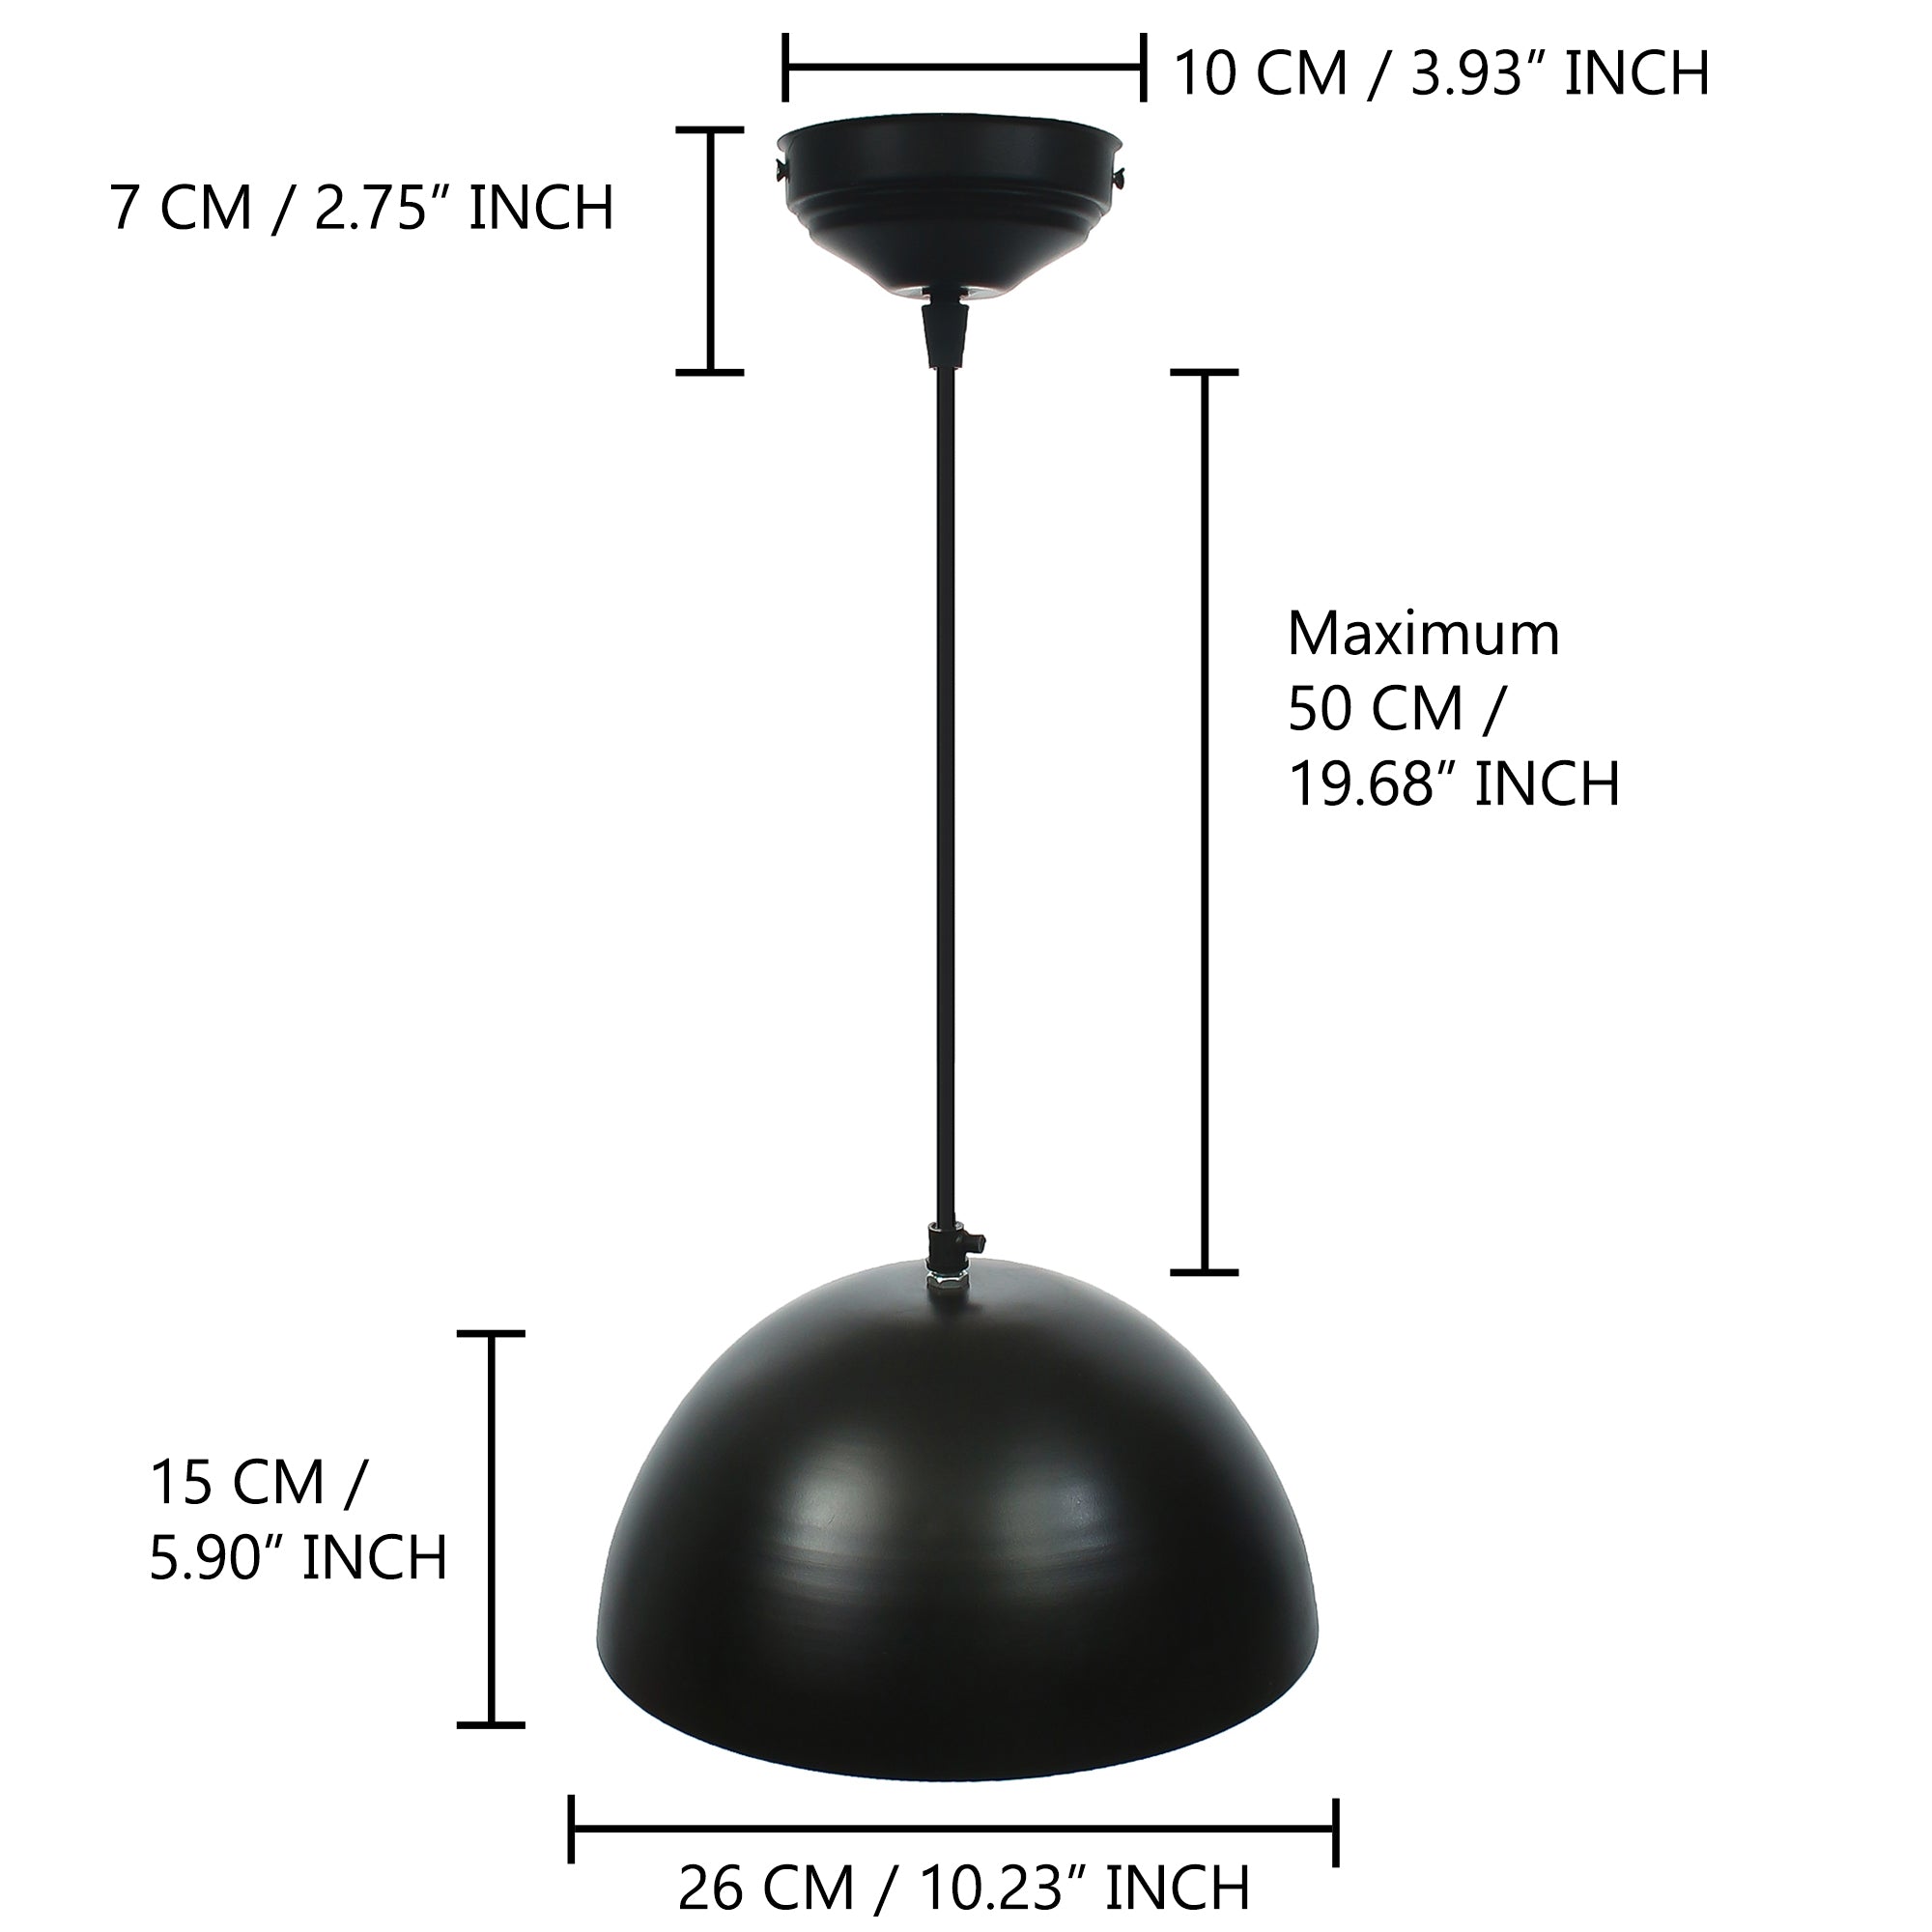 Shining Black Glossy Finish Pendant Light, 10" Diameter Ceiling Hanging Lamp for Home/Living Room/Offices/Restaurants 3